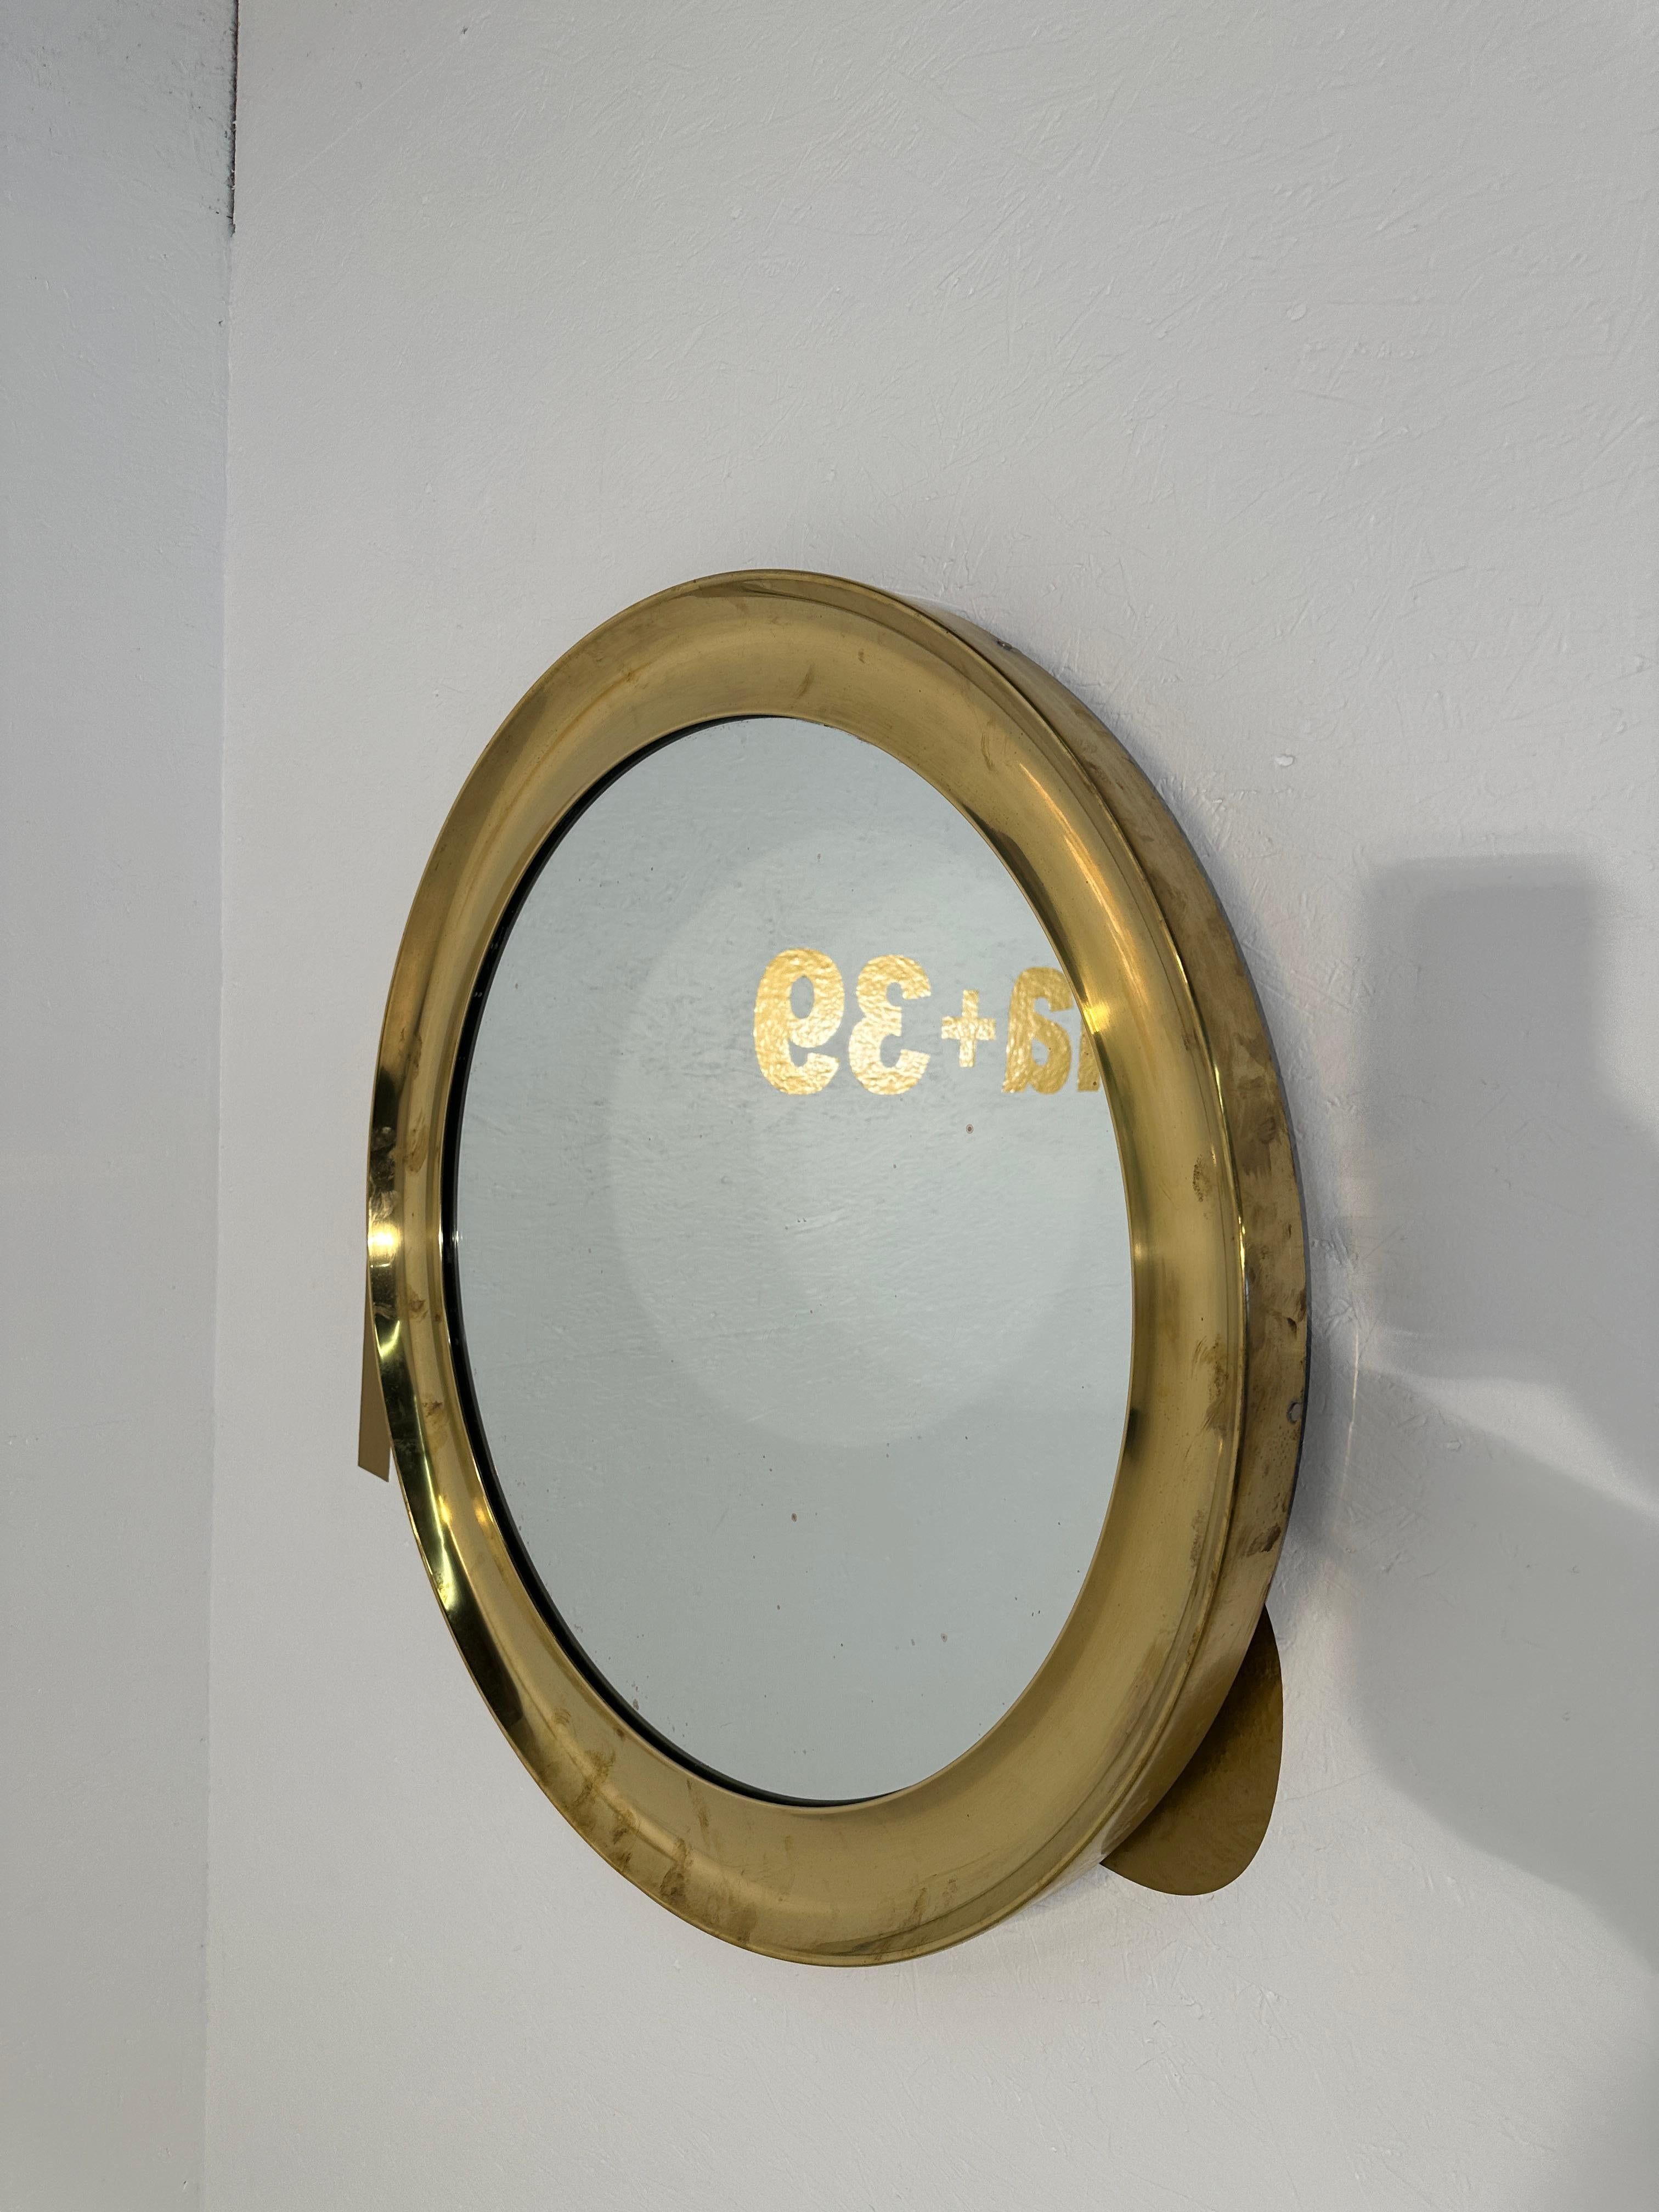 Un exquis miroir rond italien en laiton datant des années 1980, d'une élégance intemporelle avec son design classique et son cadre en laiton lustré. Reflétant le charme de l'artisanat italien, ce miroir ajoute une touche de sophistication à tout